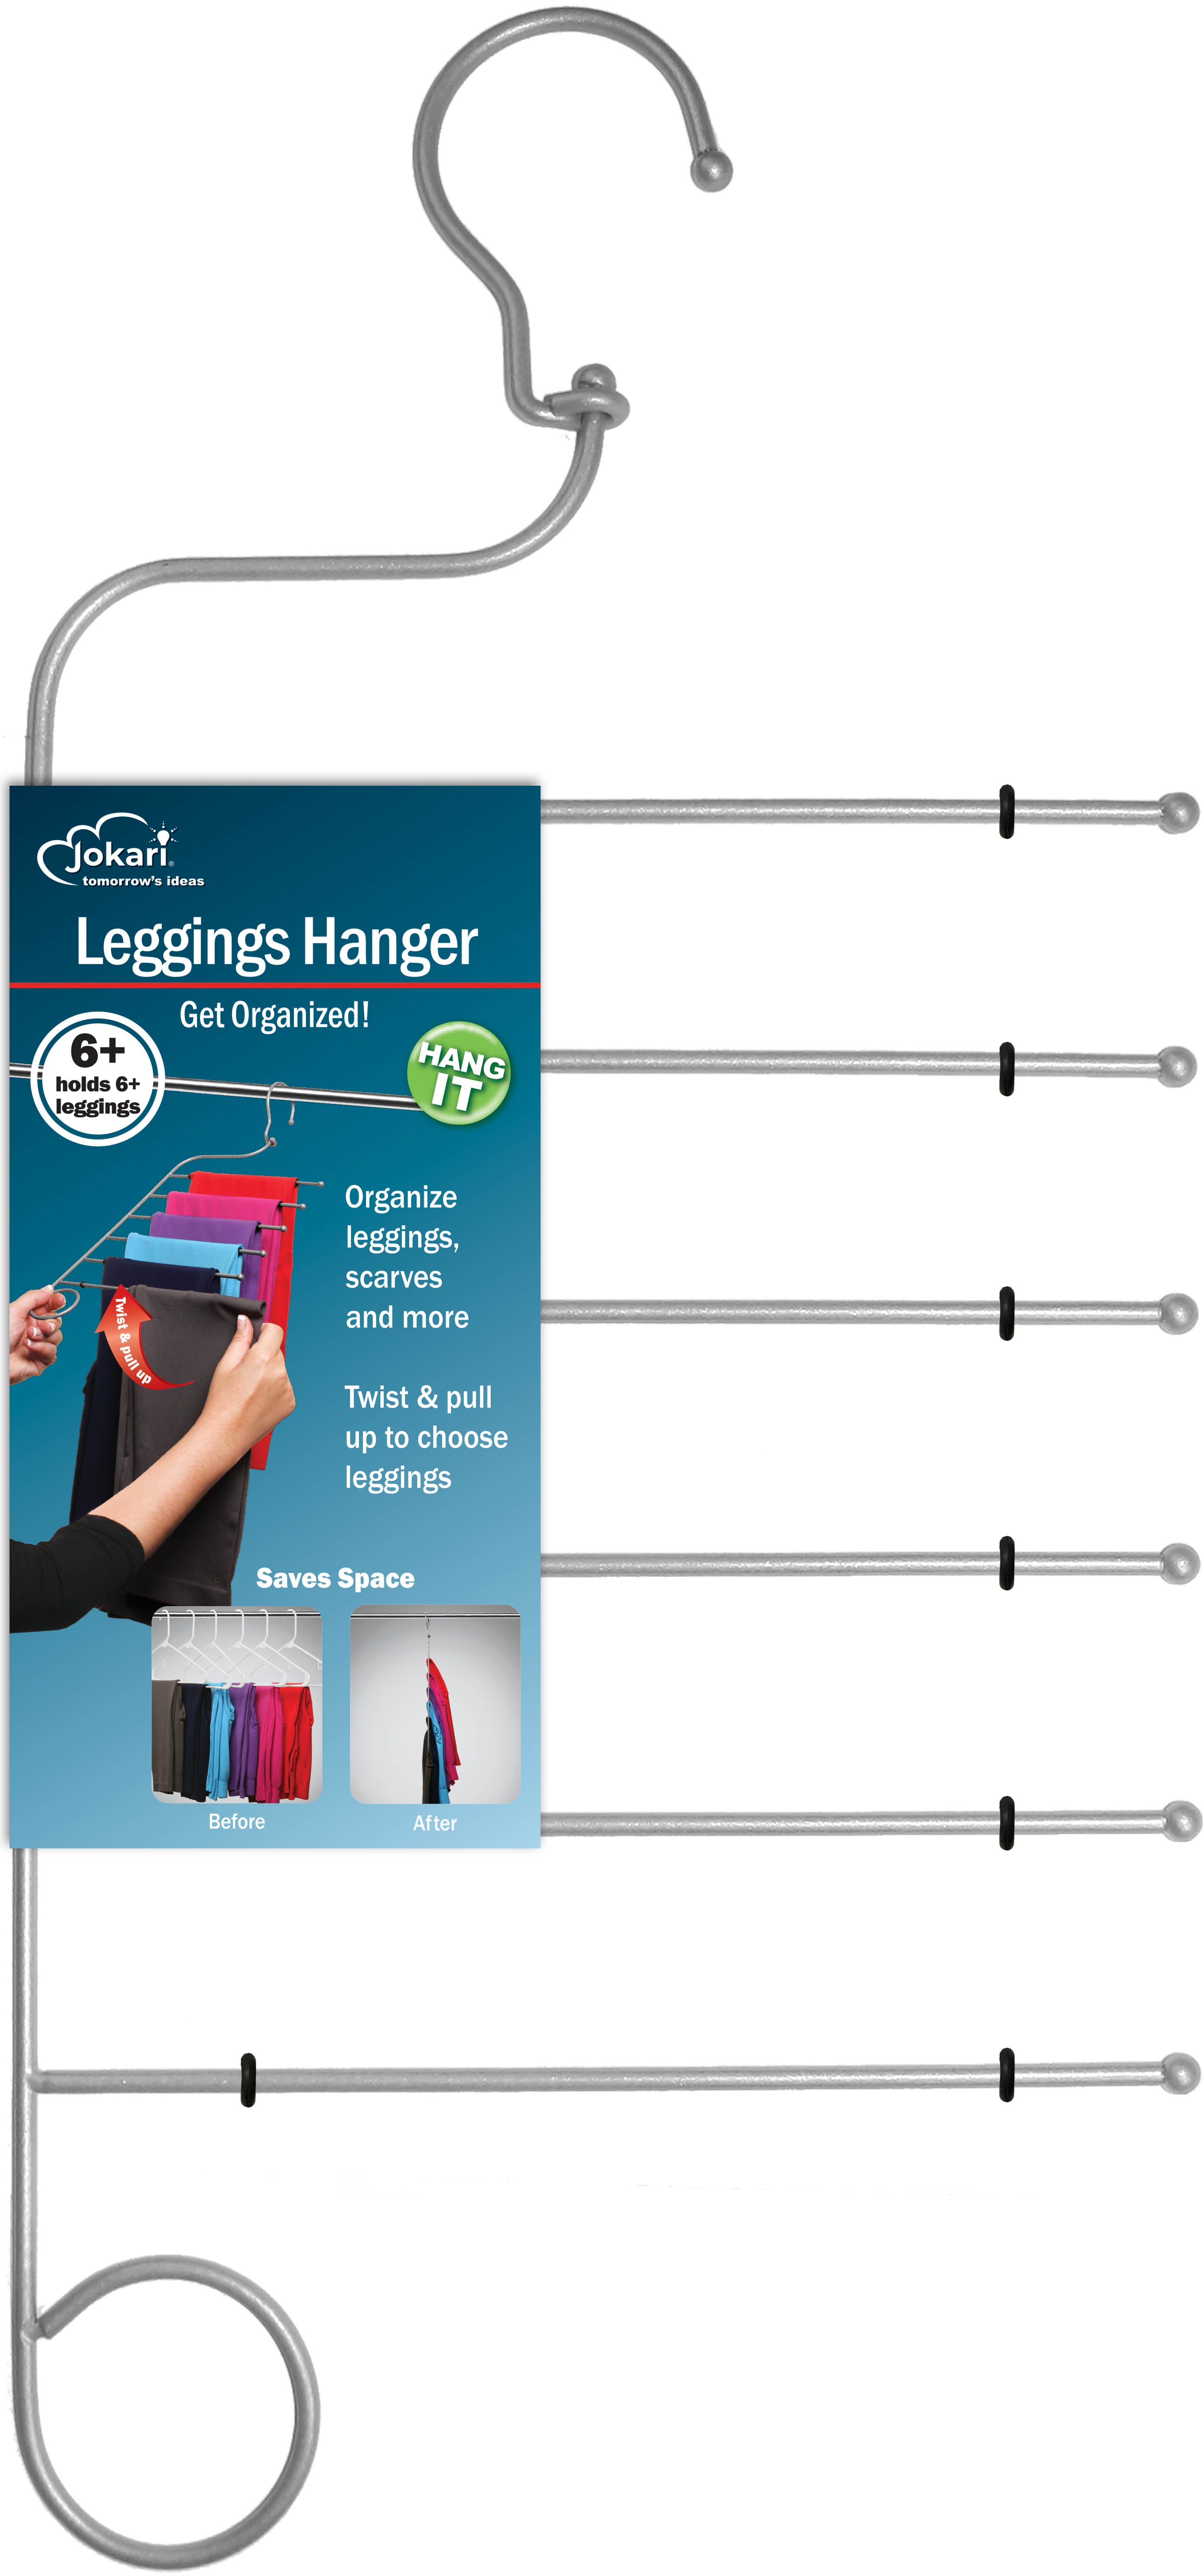 Leggings Hanger